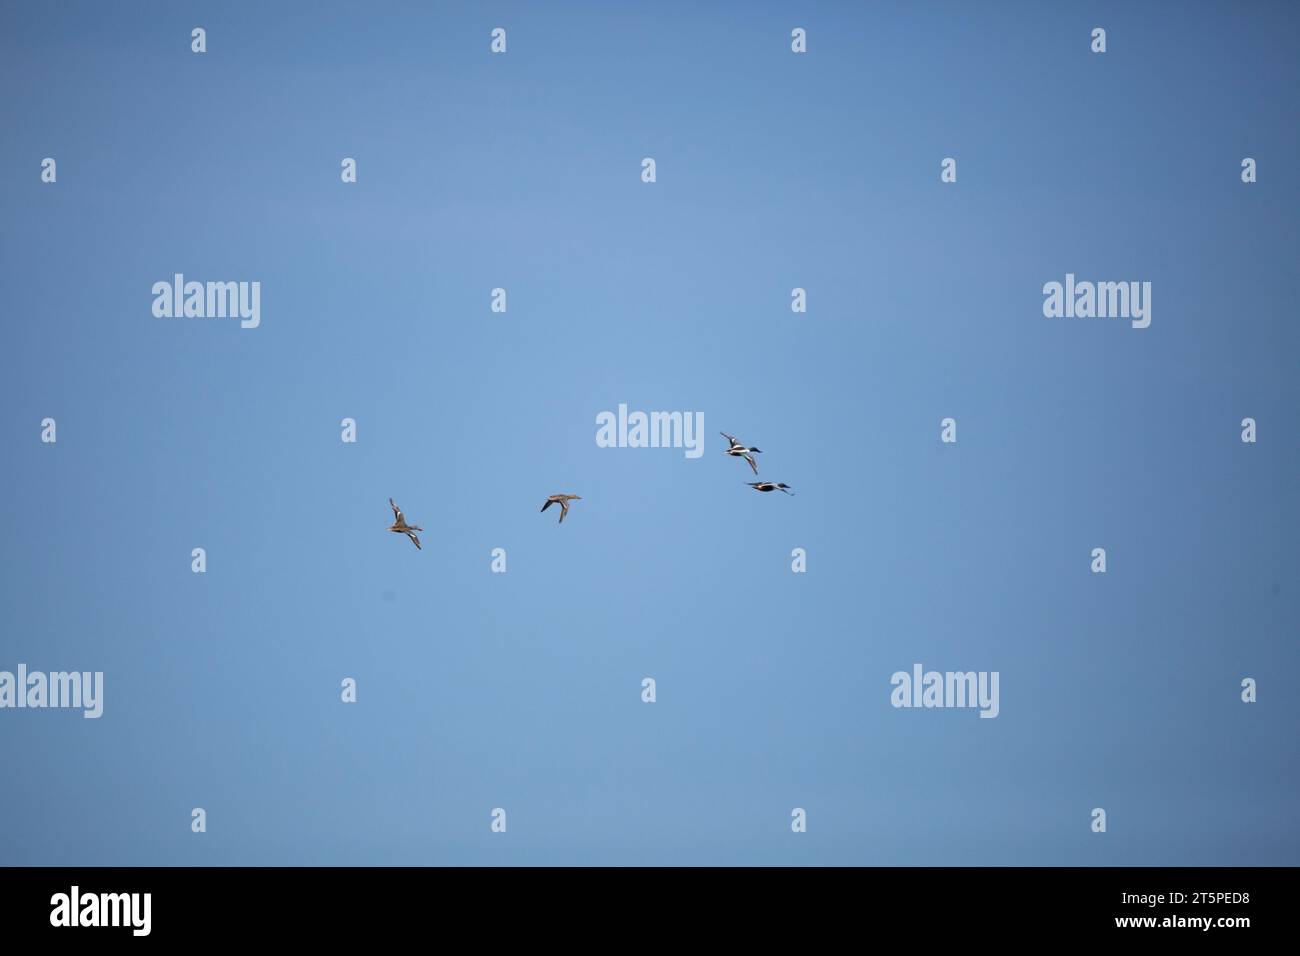 Quattro anatre dello shoveler settentrionale (Spatula clypeata) -- due femmine e due maschi -- che volano attraverso un cielo blu profondo Foto Stock